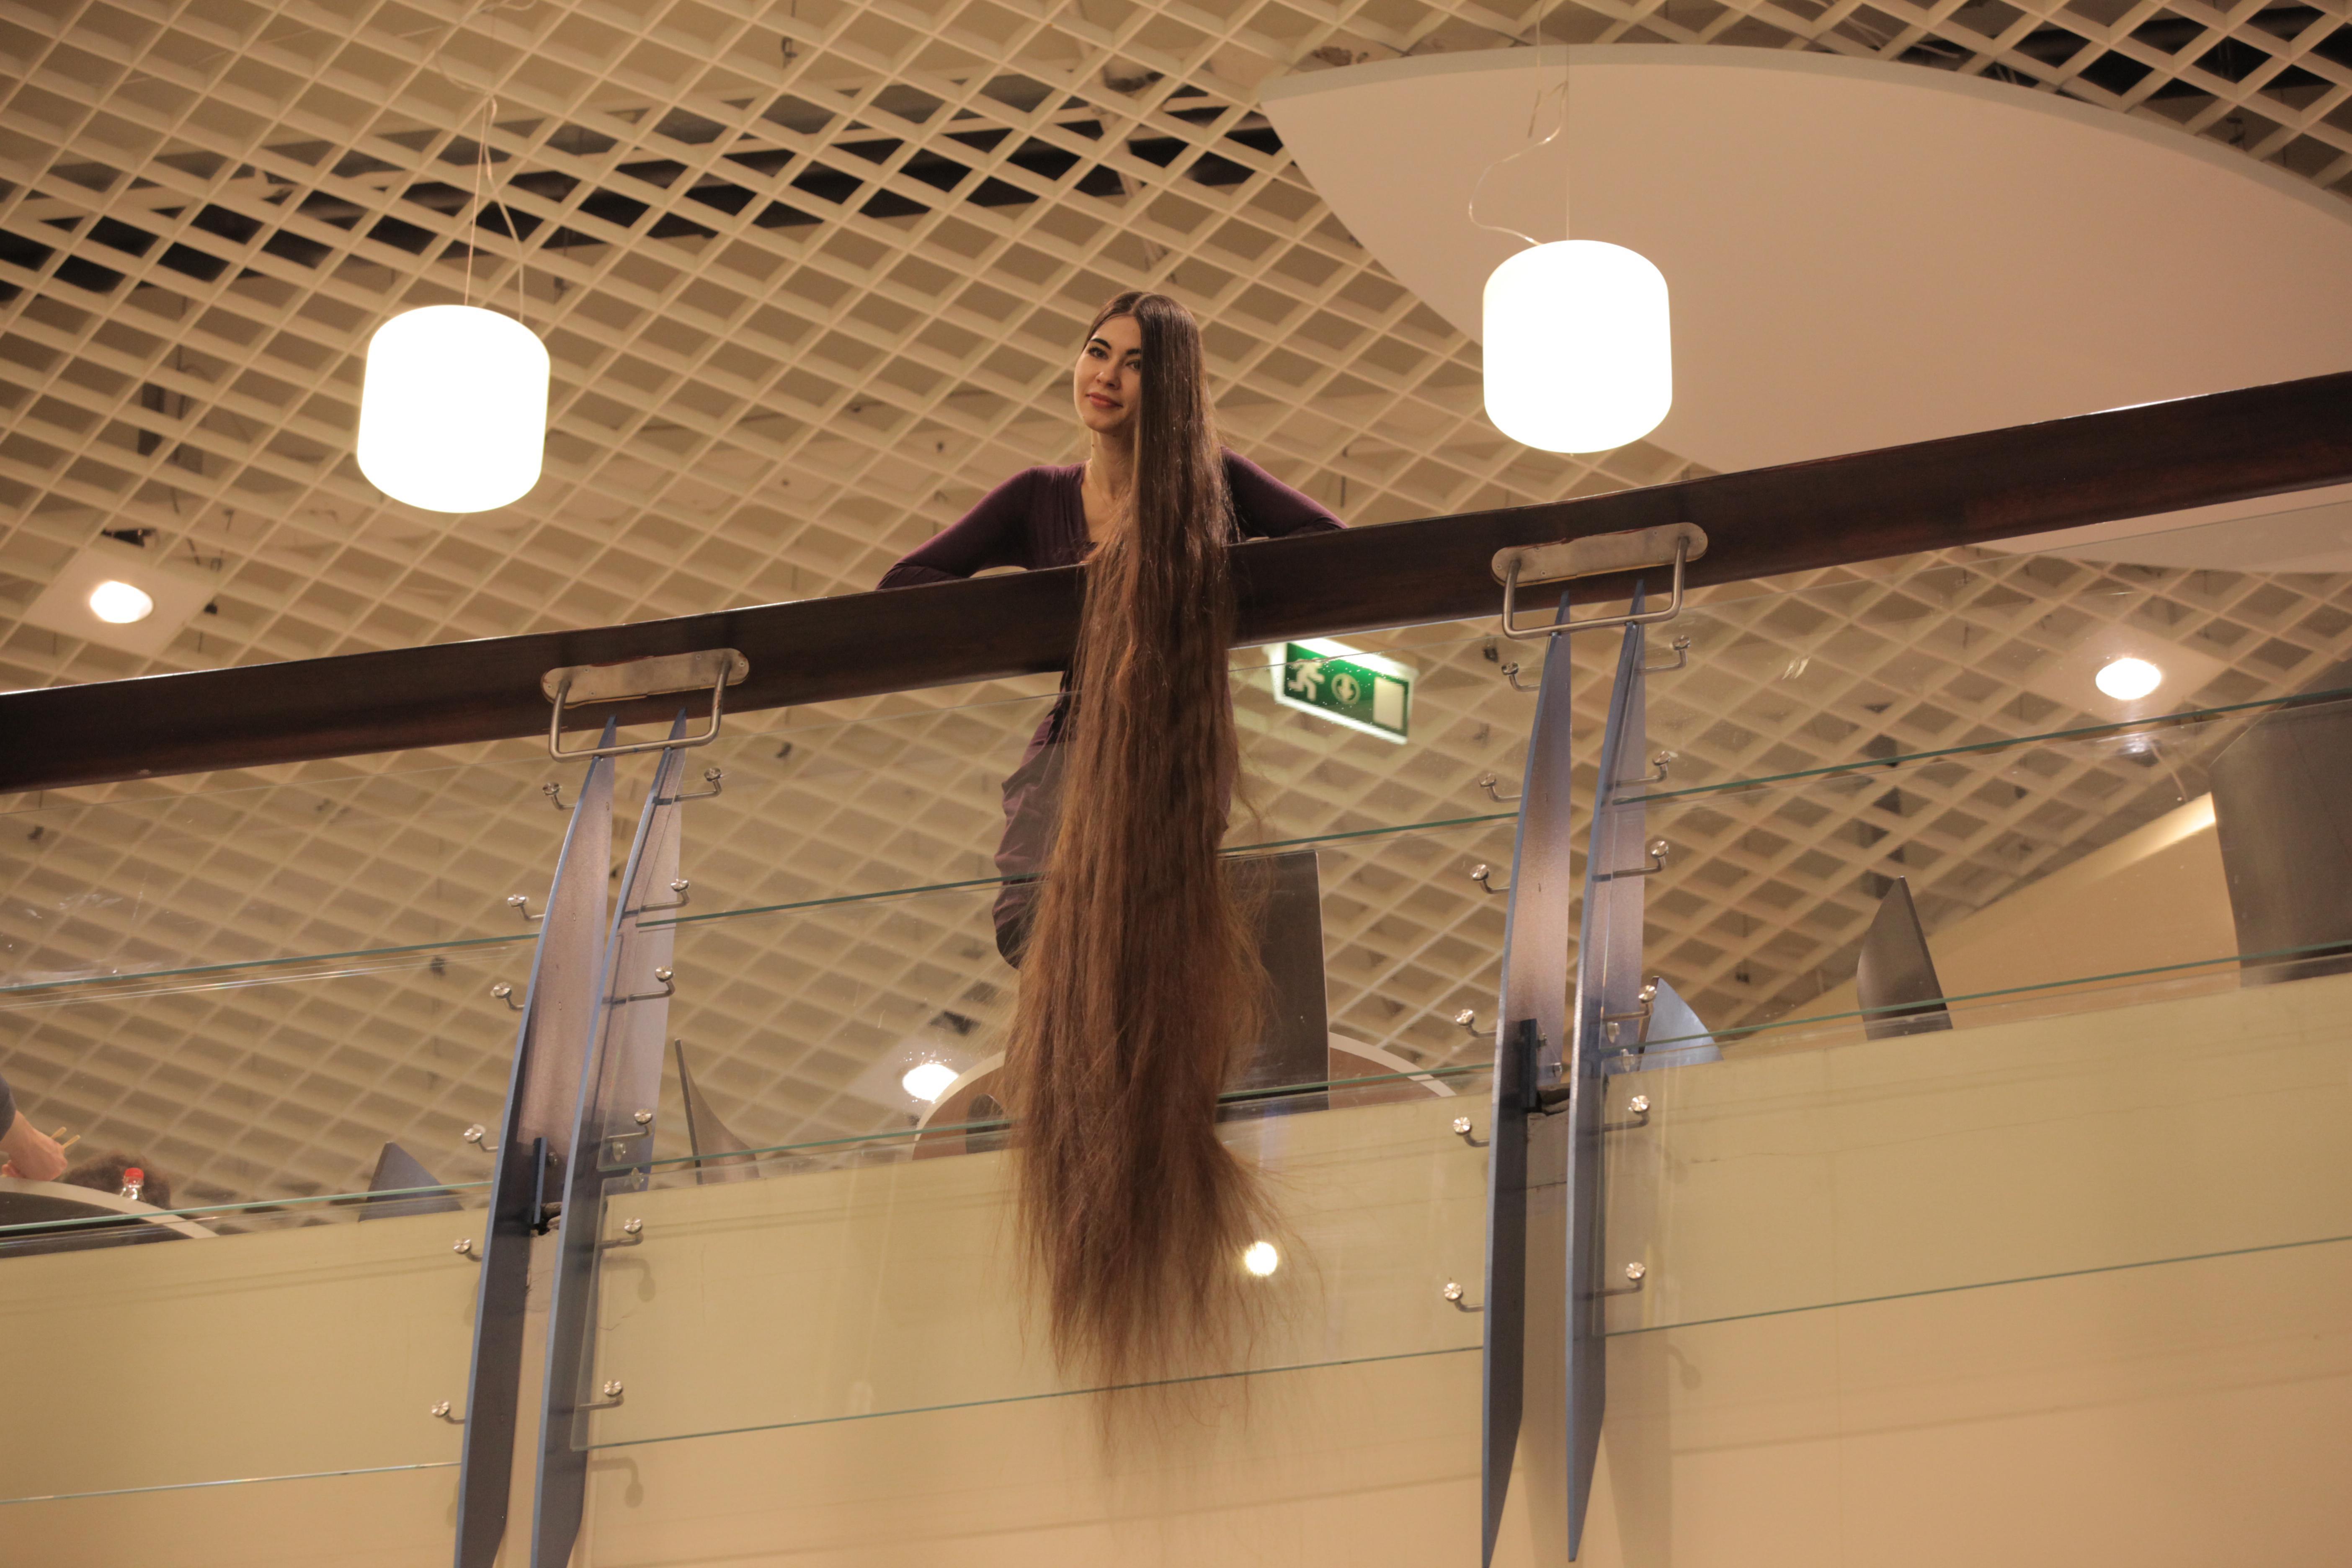 Рапунцель Алия Насырова вырастила свои волосы до 2,30 метров в длину